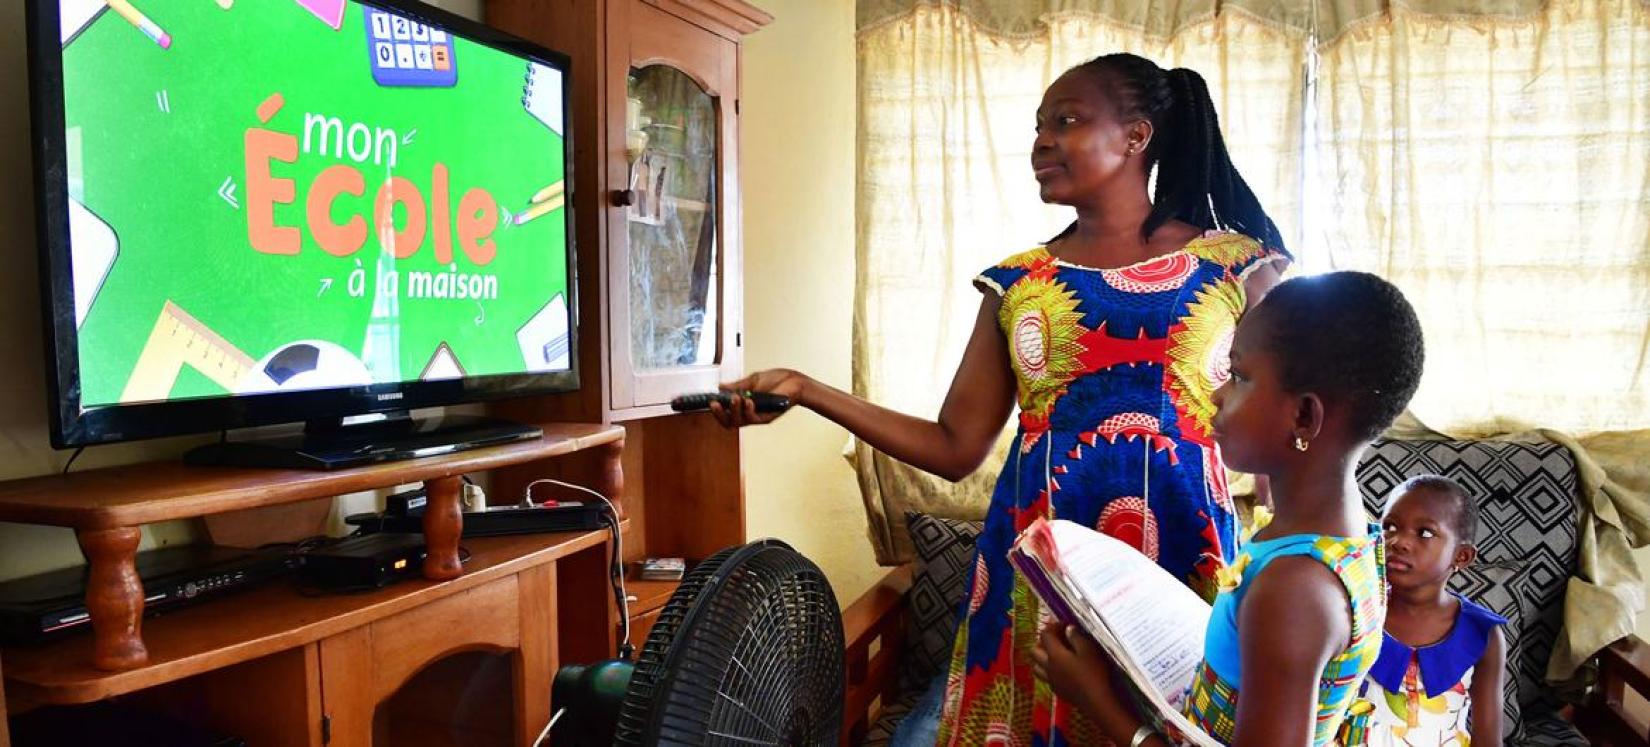 Uma mãe ajuda sua filha de oito anos a ter aulas na televisão durante a pandemia de COVID-19 em casa em Man, Costa do Marfim.